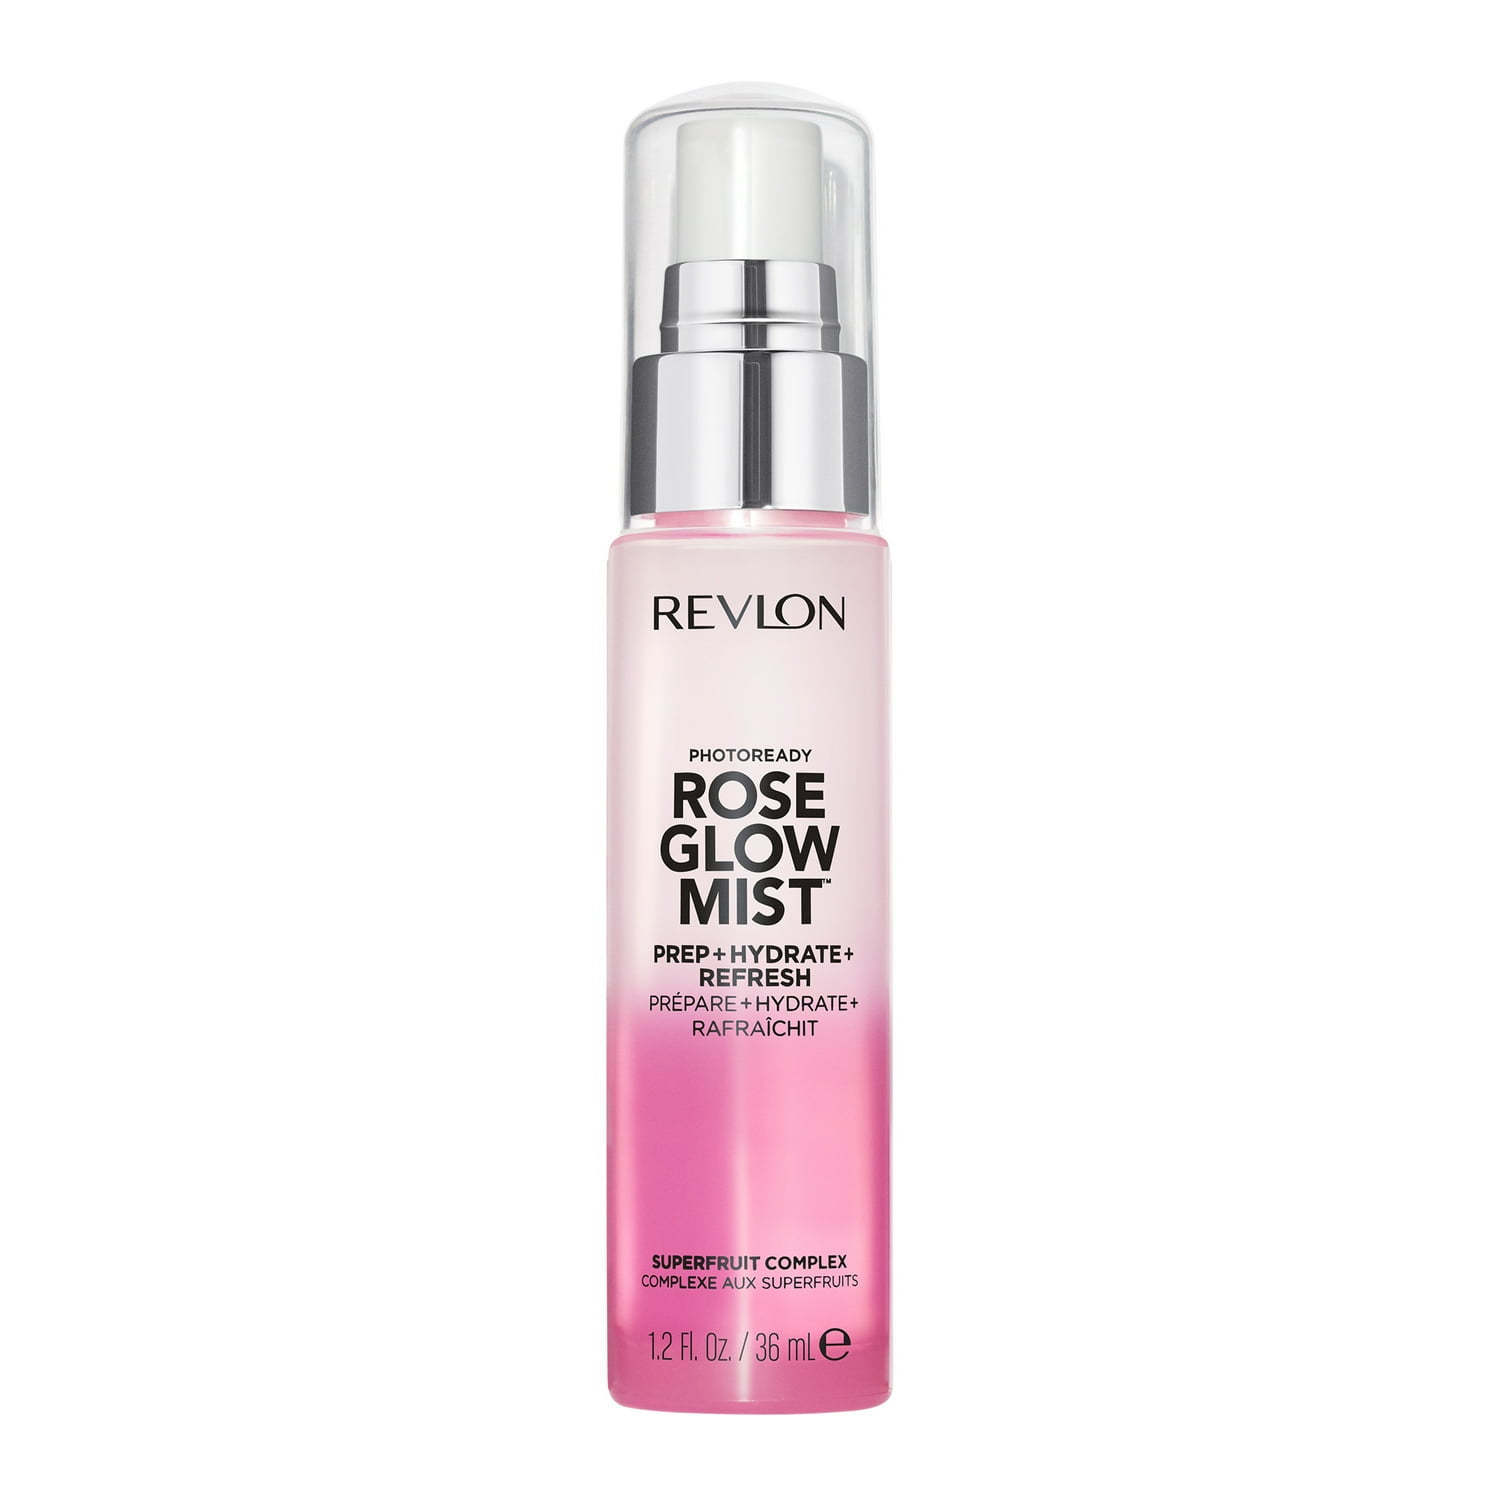 Revlon PhotoReady Rose Glow Mist Spray, Dewy Finish, 24 Hour Hydration, 1.2 fl oz